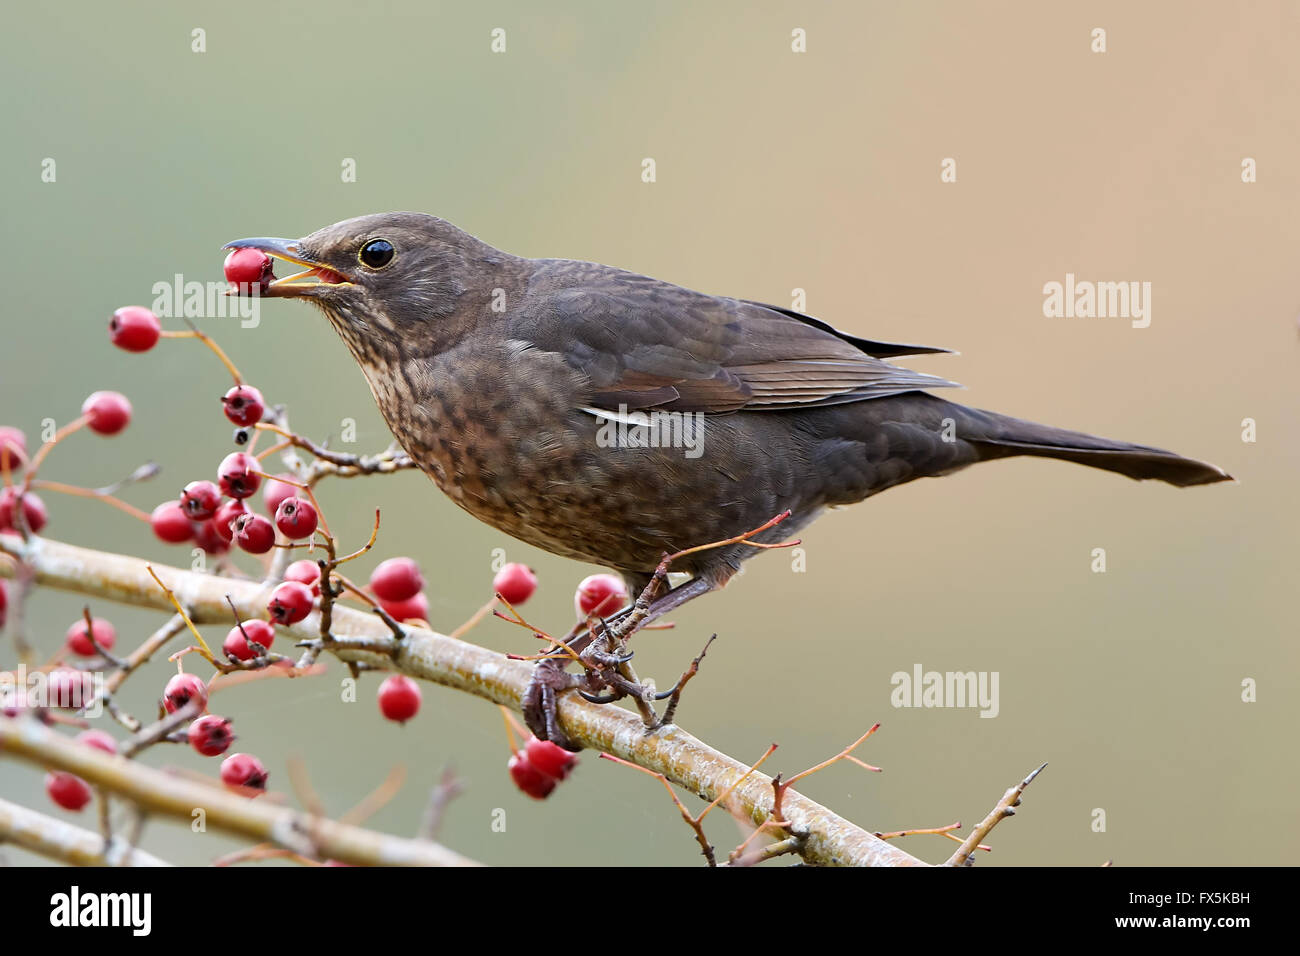 Blackbird assis sur une branche avec un red berrie dans son bec Banque D'Images